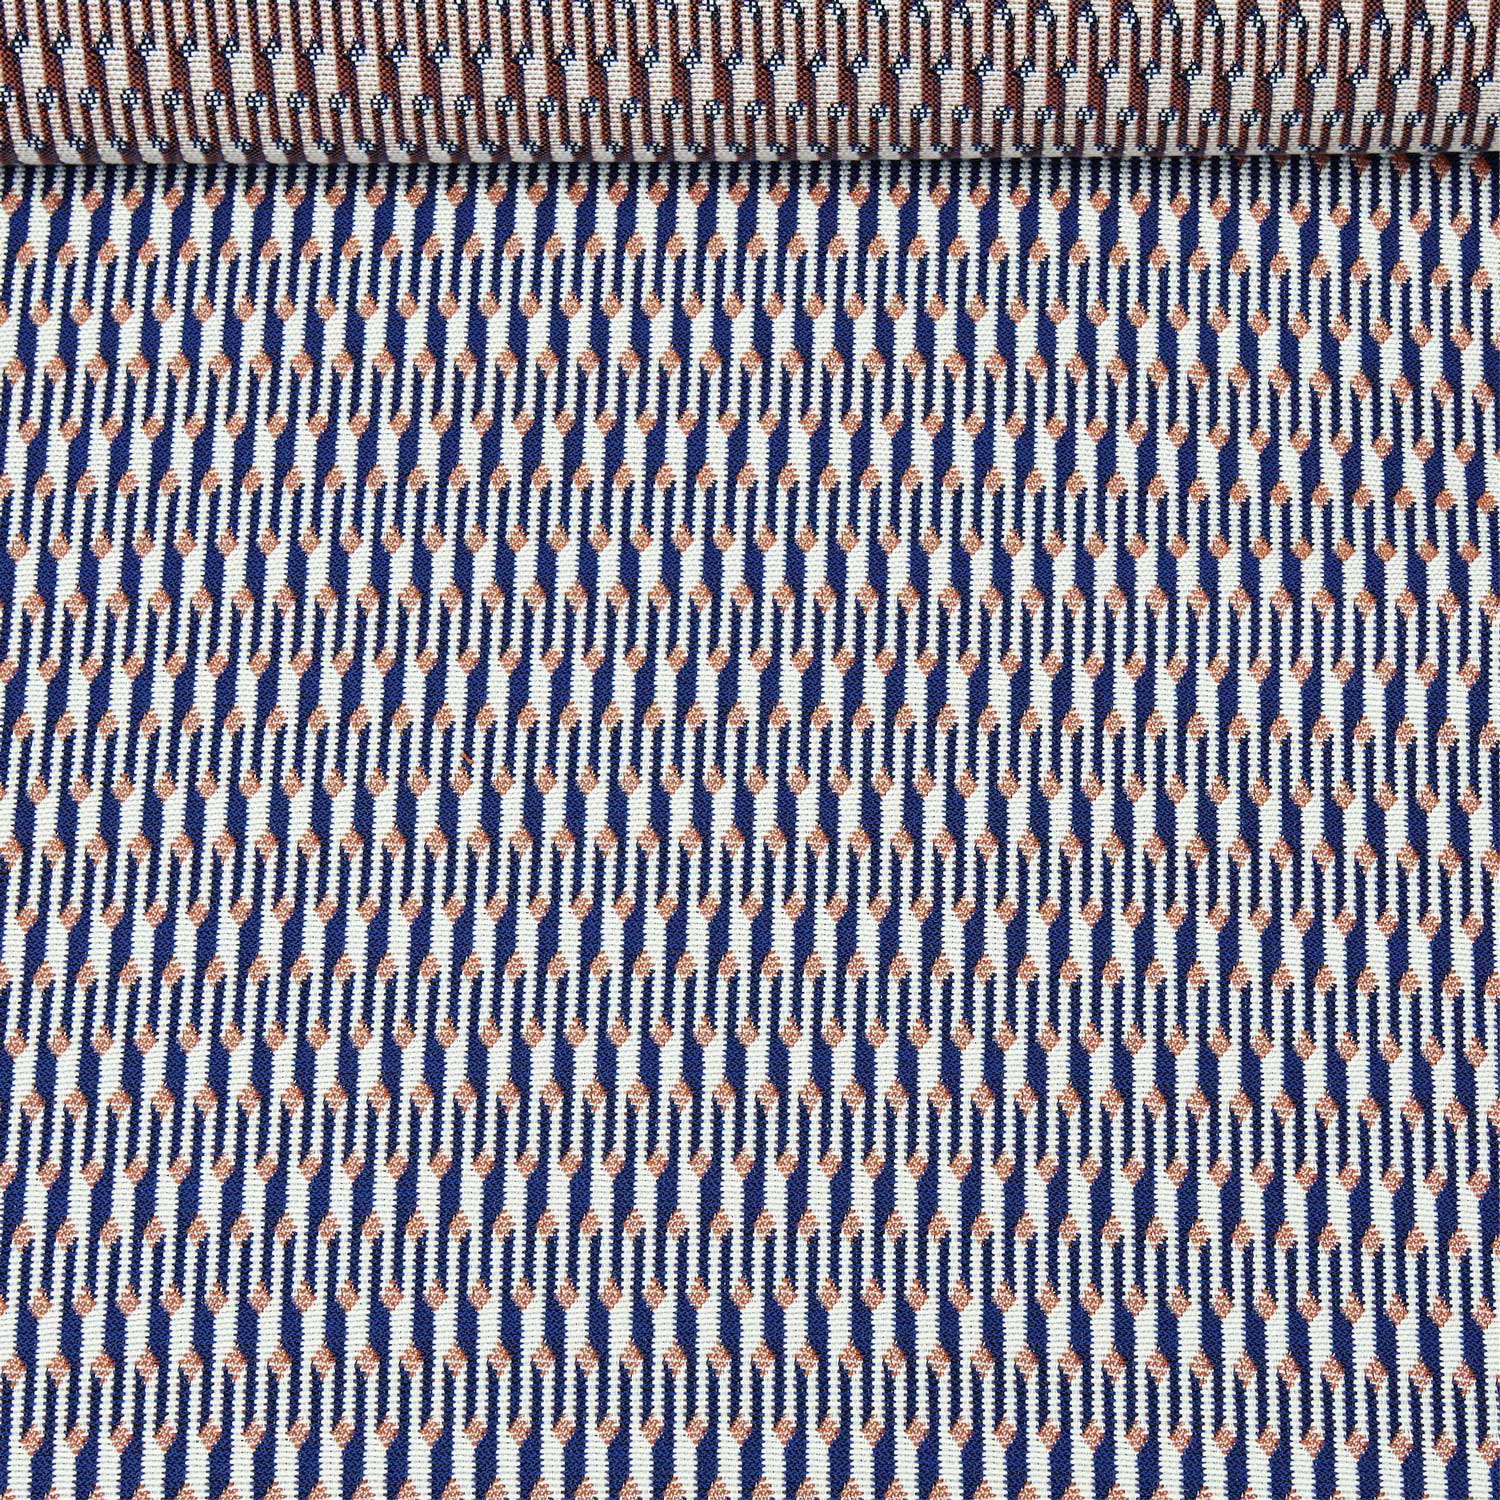 Tissu acrylique Jacquard teint dans la masse, bleu, orange et blanc, utilisé pour les flotteurs de piscine de luxe.